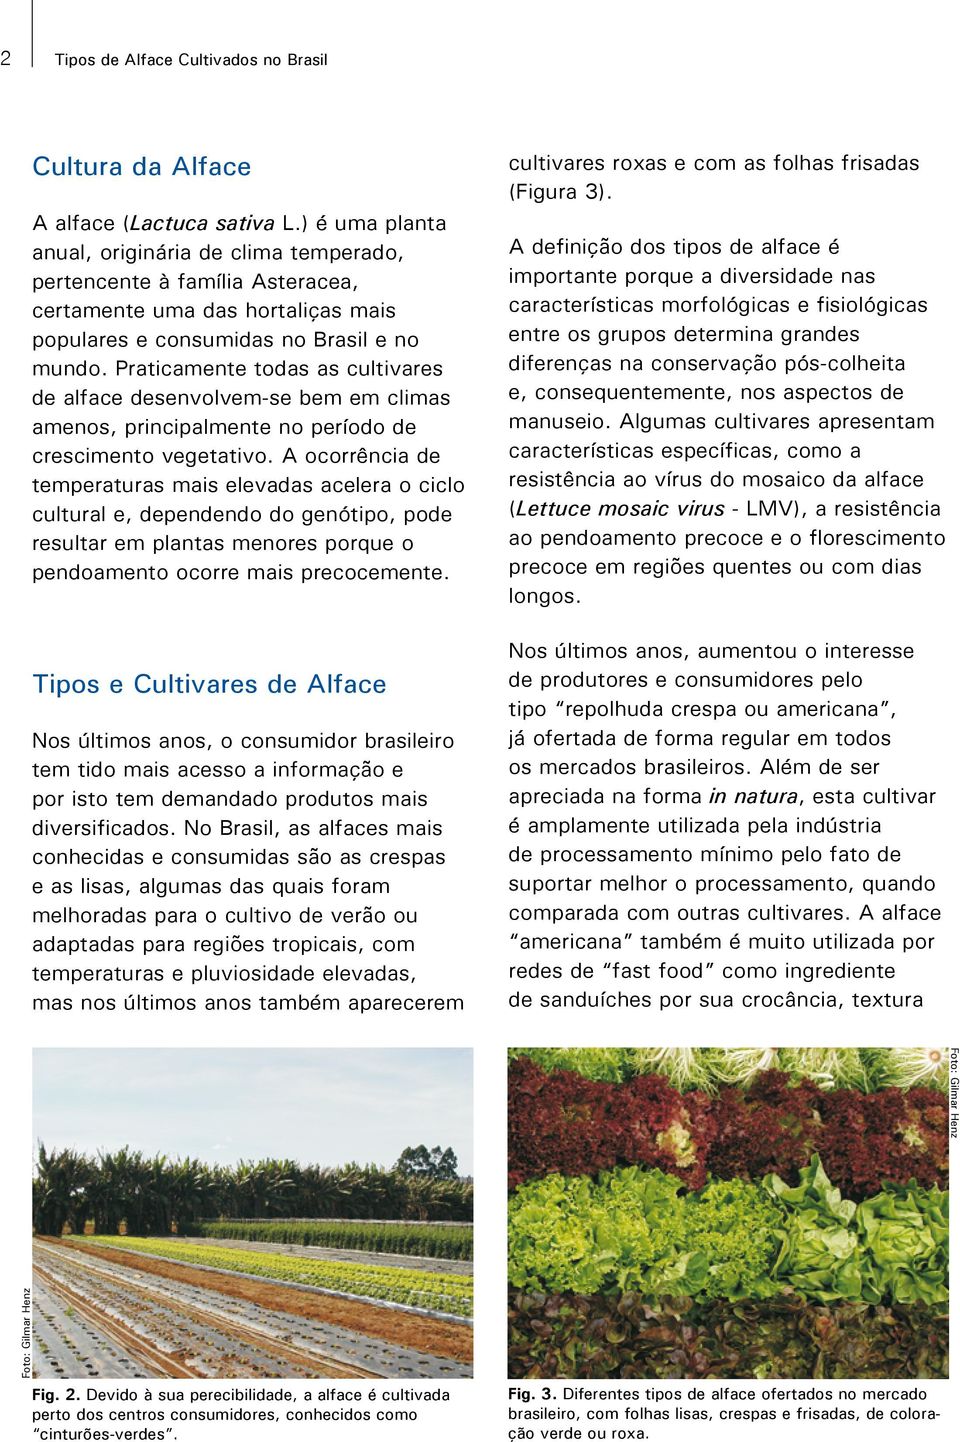 Praticamente todas as cultivares de alface desenvolvem-se bem em climas amenos, principalmente no período de crescimento vegetativo.